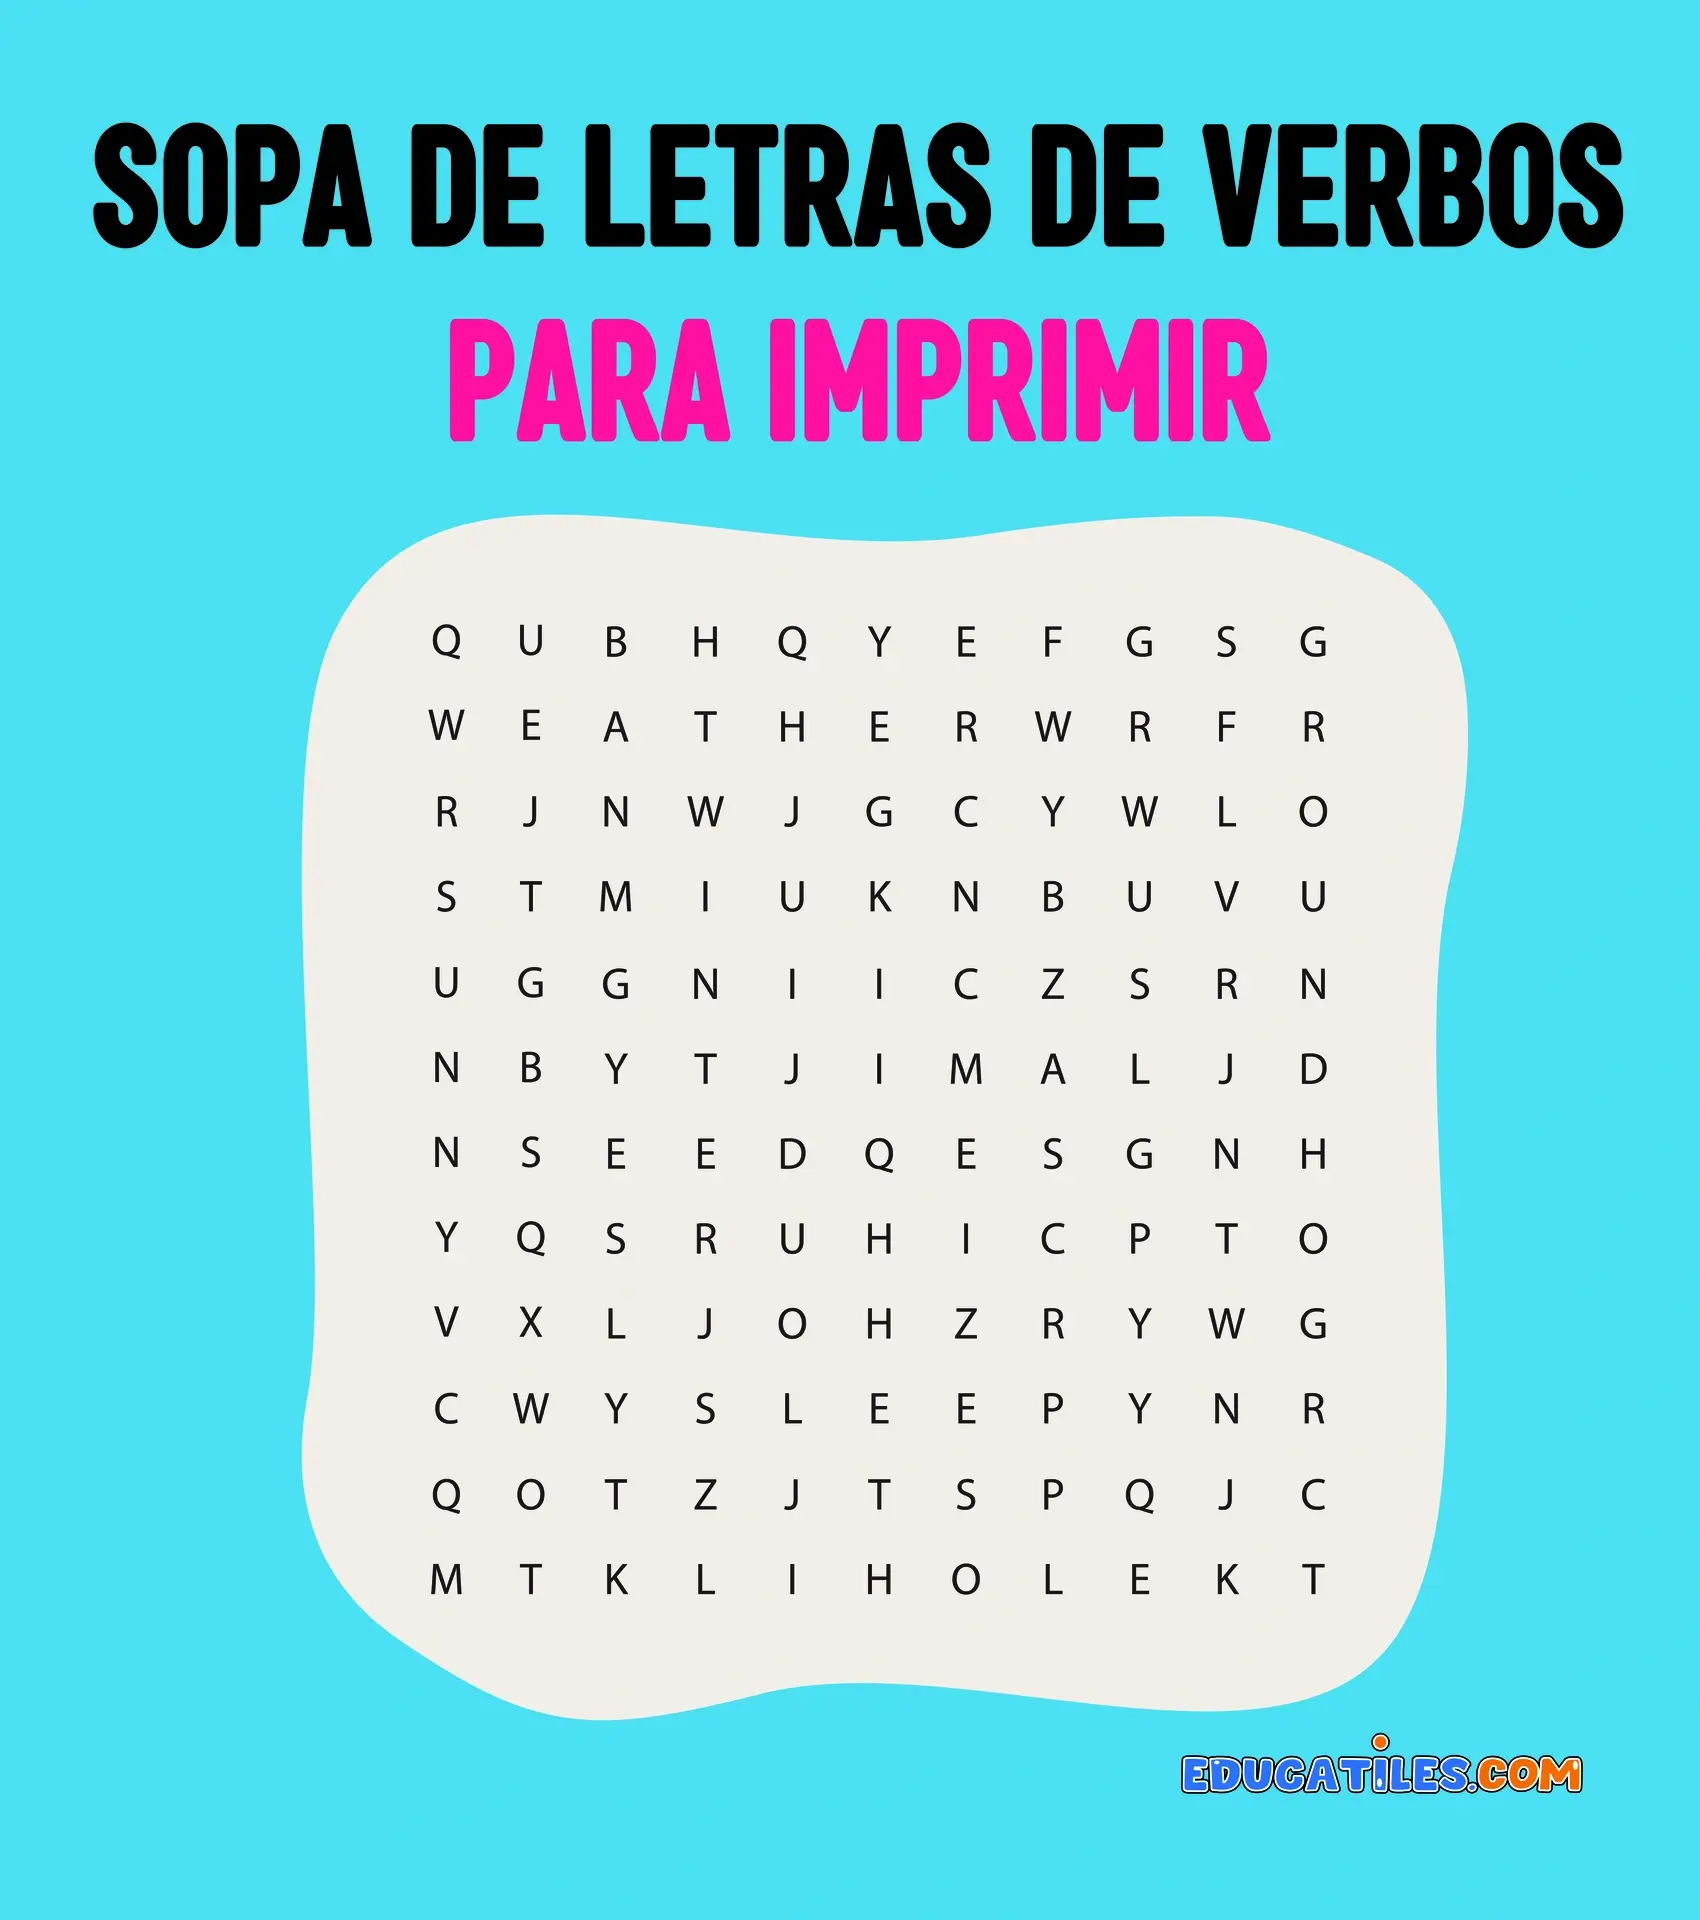 Sopa de letras de verbos para imprimir Cuentos en español Materiales educativos Historias